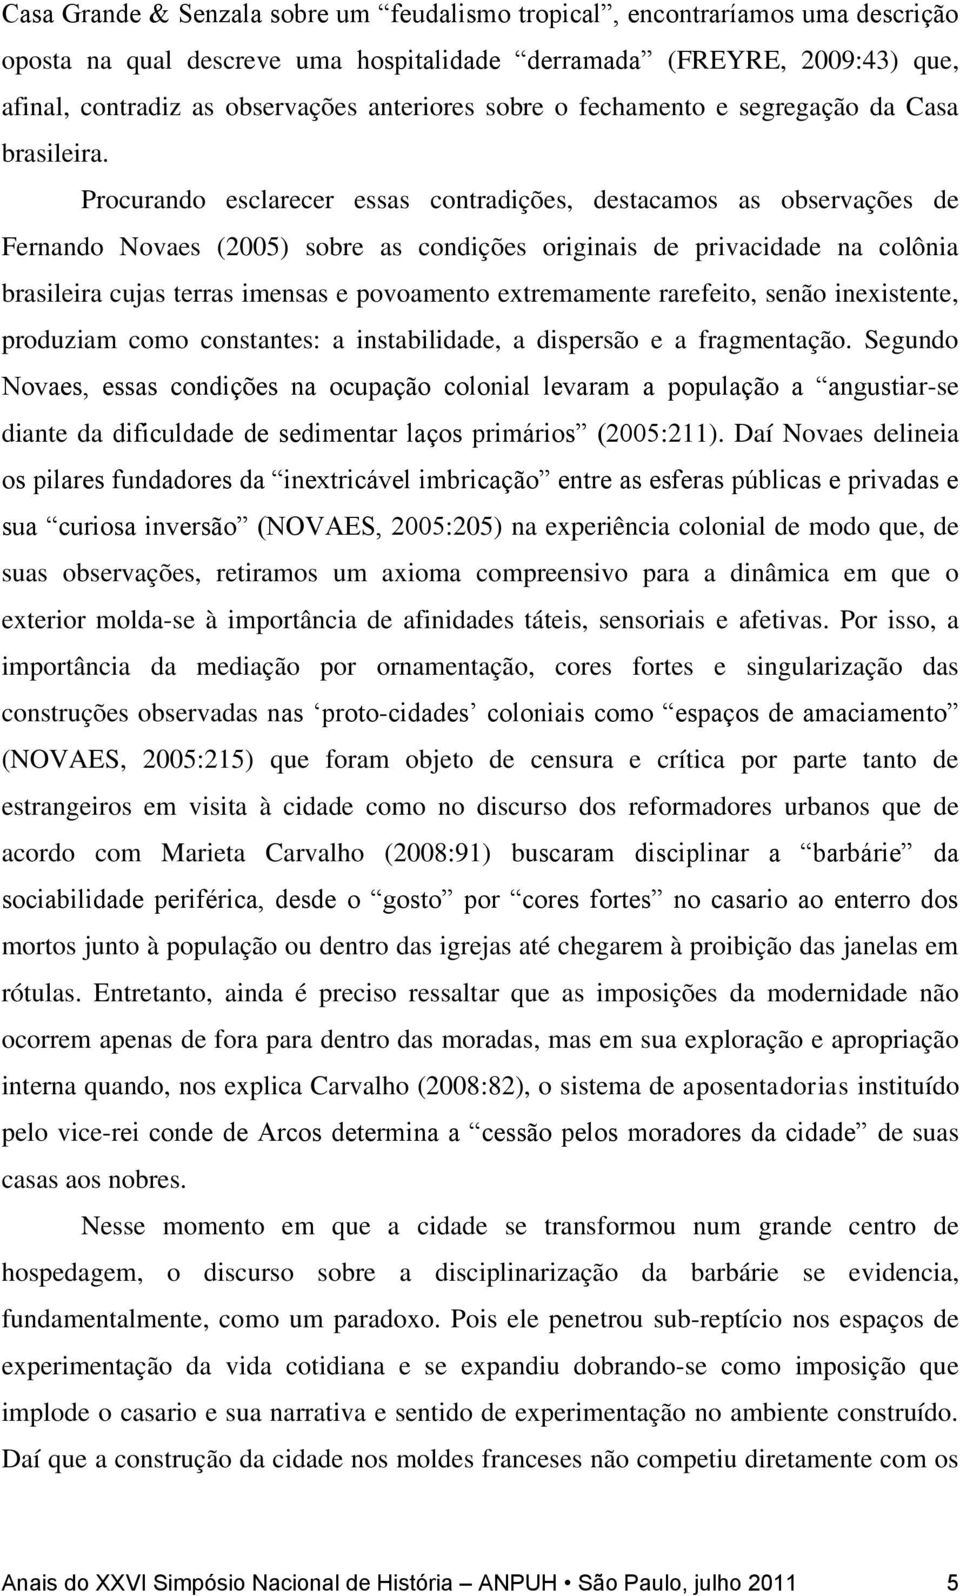 Procurando esclarecer essas contradições, destacamos as observações de Fernando Novaes (2005) sobre as condições originais de privacidade na colônia brasileira cujas terras imensas e povoamento